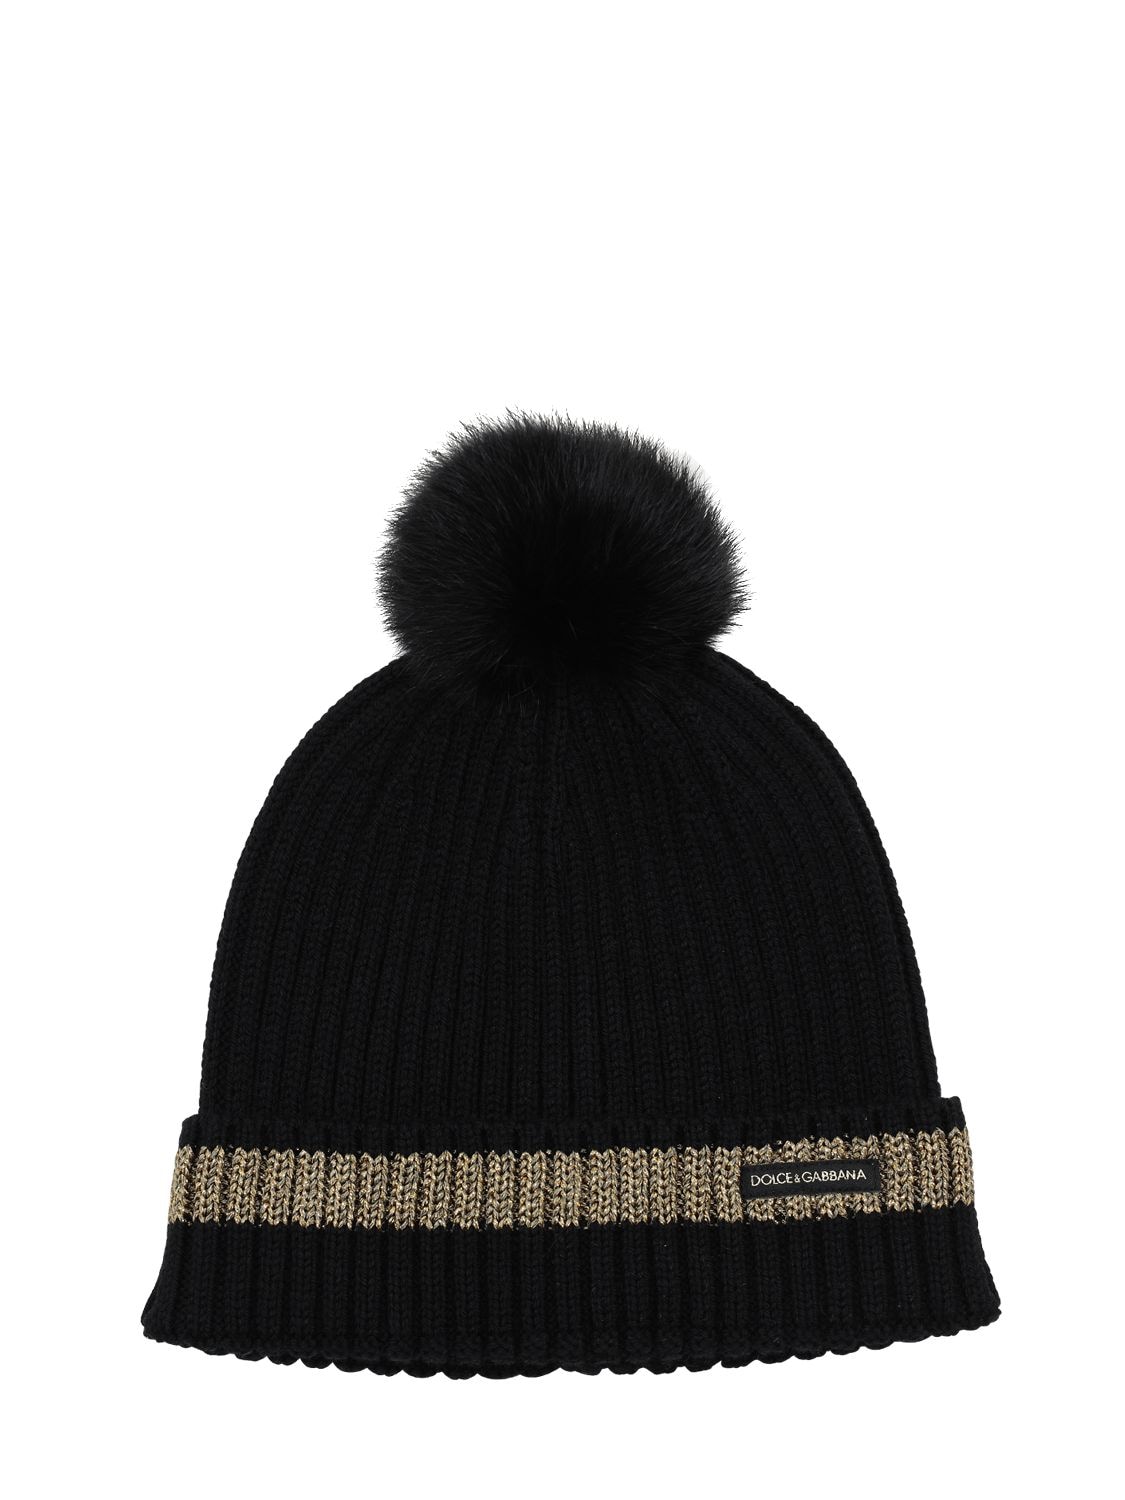 Wool Knit Beanie Hat W/ Pompom